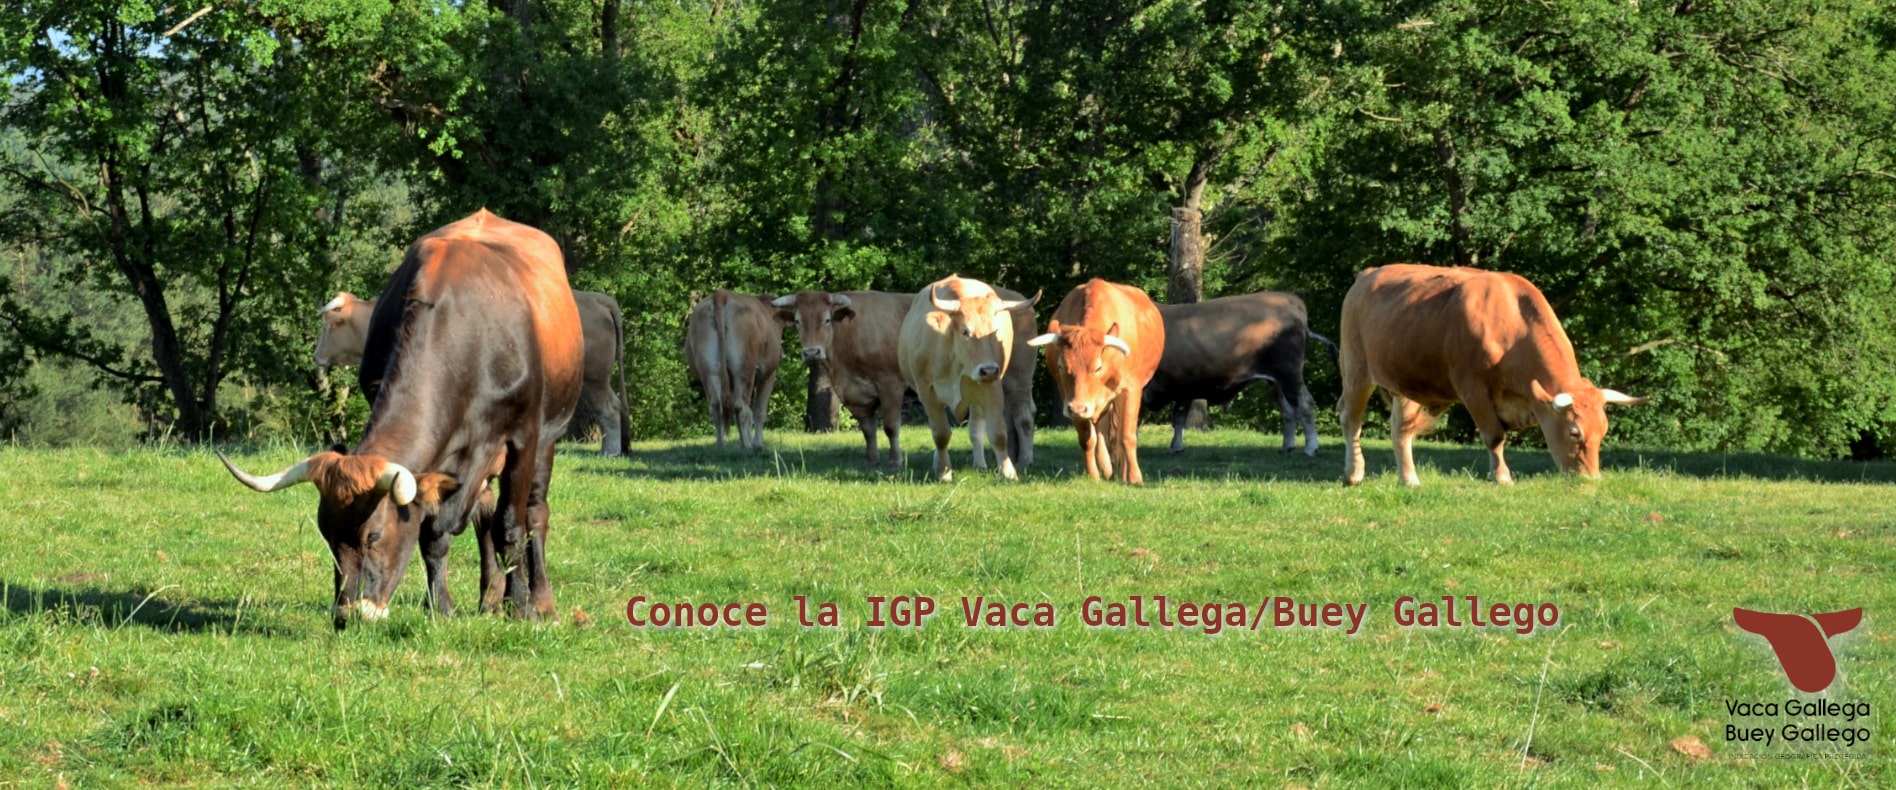 IGP Vaca Gallega y Buey Gallego